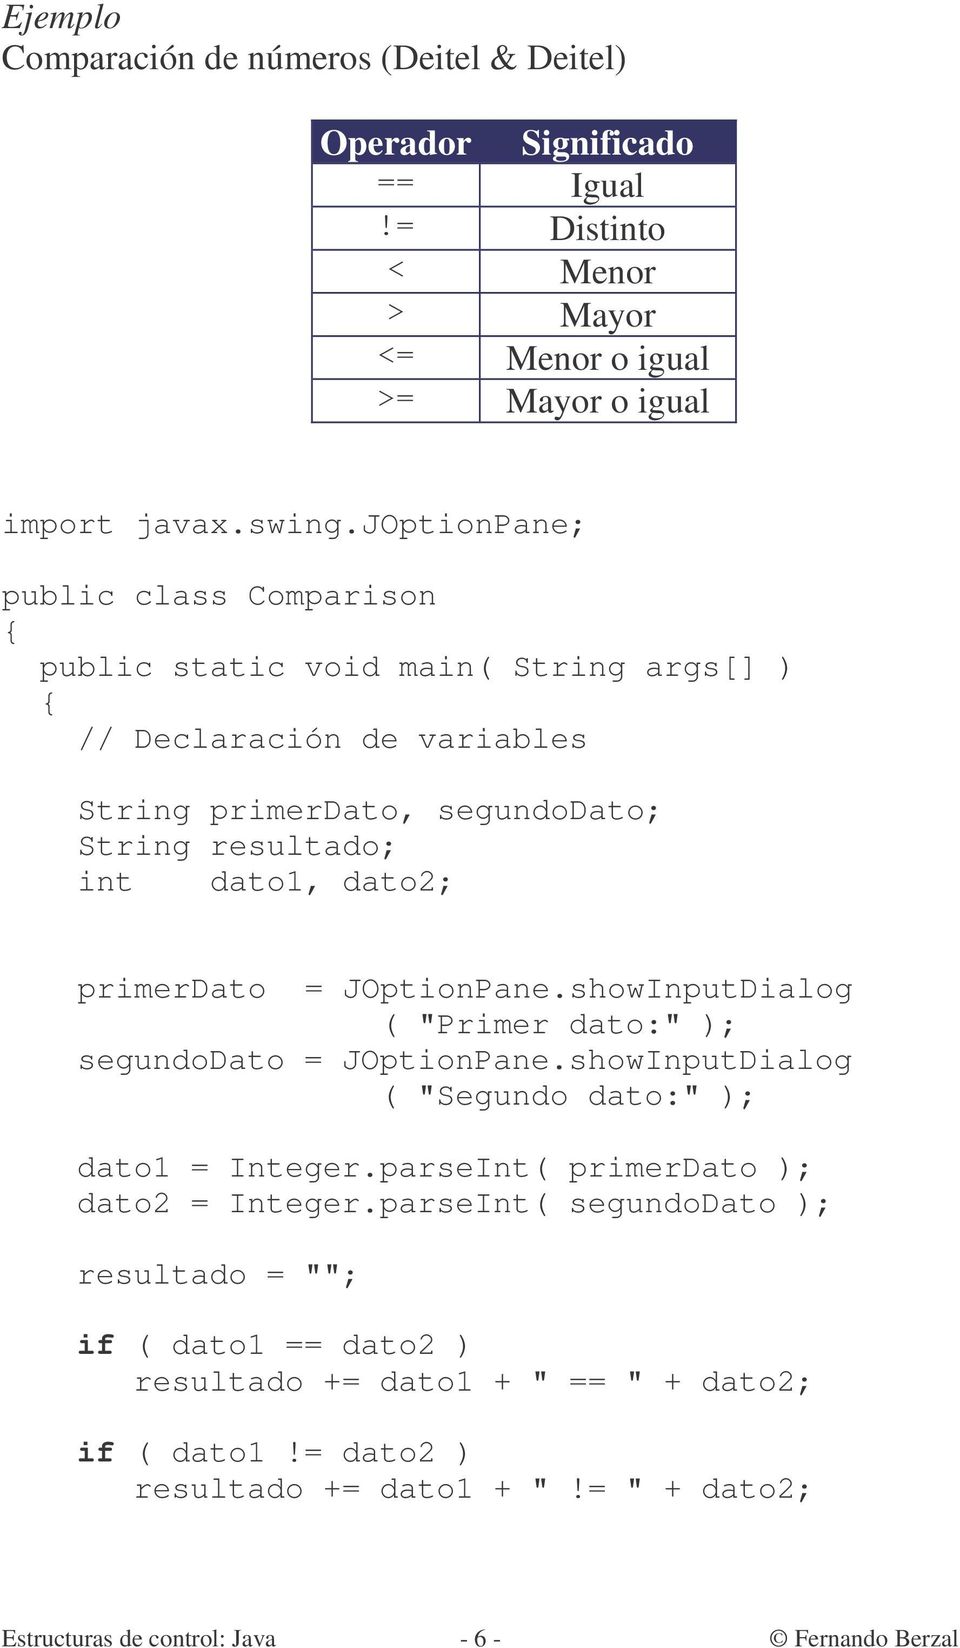 primerdato = JOptionPane.showInputDialog ( "Primer dato:" ); segundodato = JOptionPane.showInputDialog ( "Segundo dato:" ); dato1 = Integer.parseInt( primerdato ); dato2 = Integer.